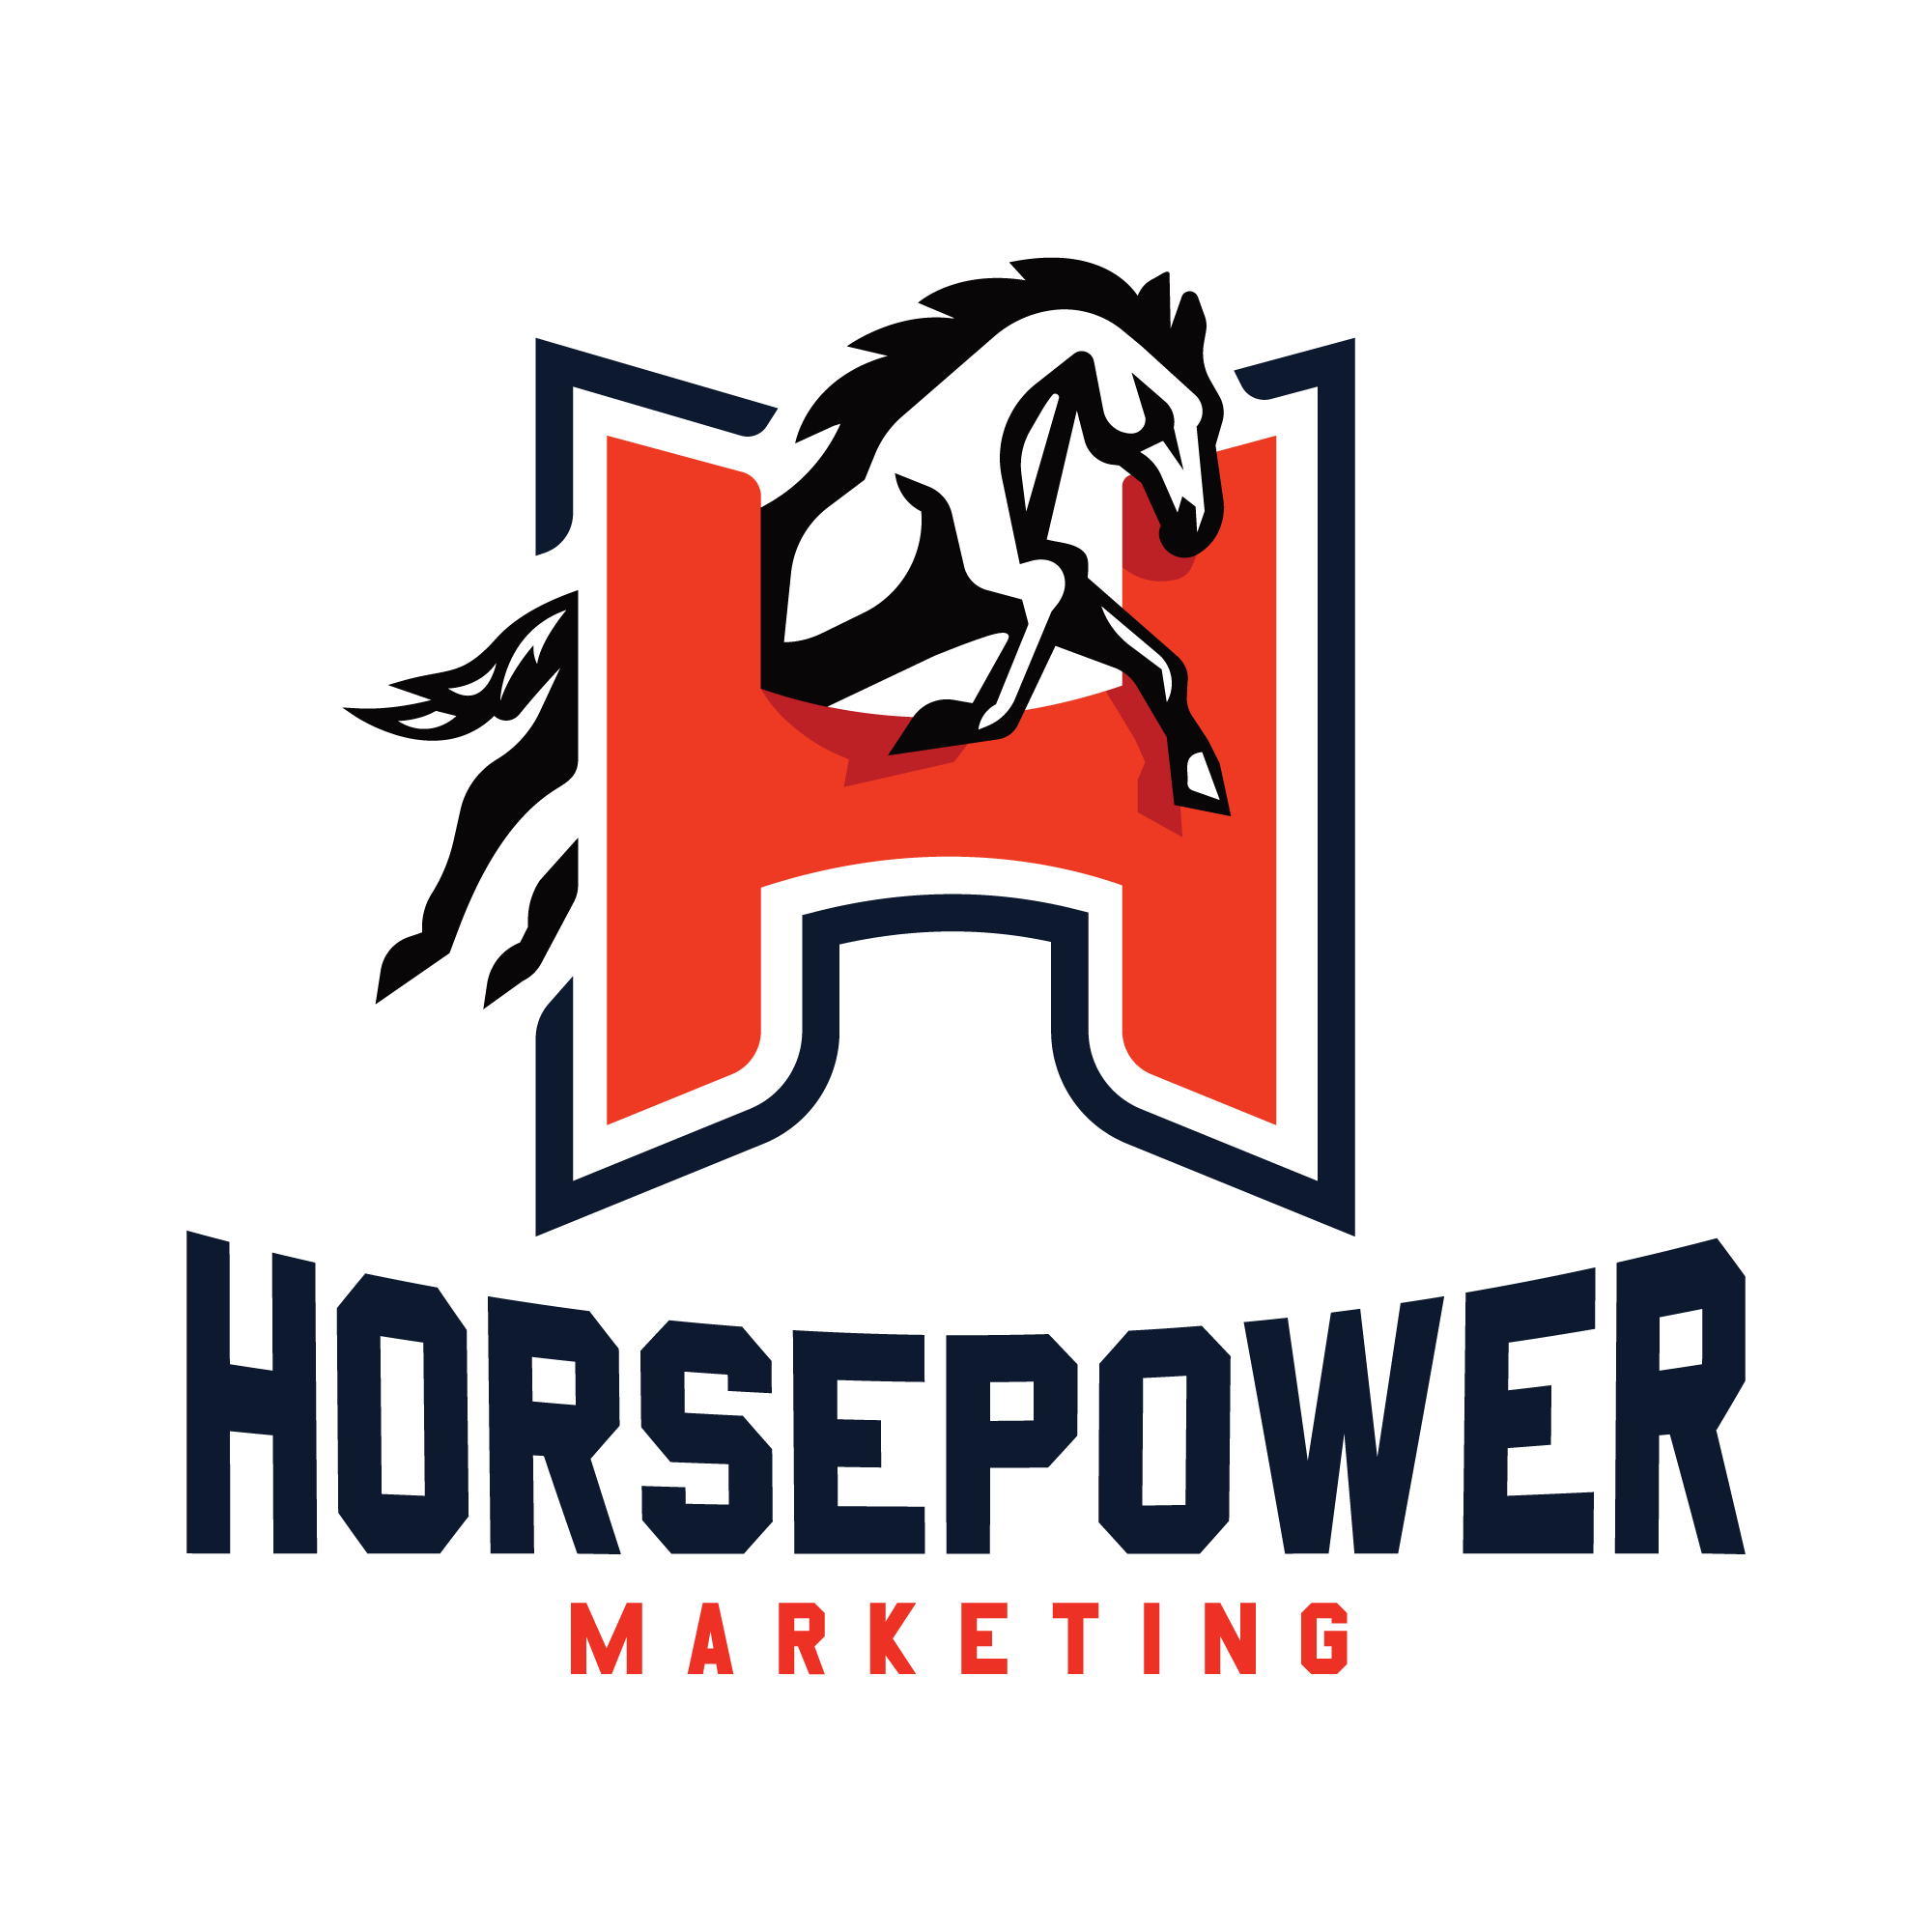 Horsepower Logo - Horsepower Marketing Letter H | Logo Cowboy